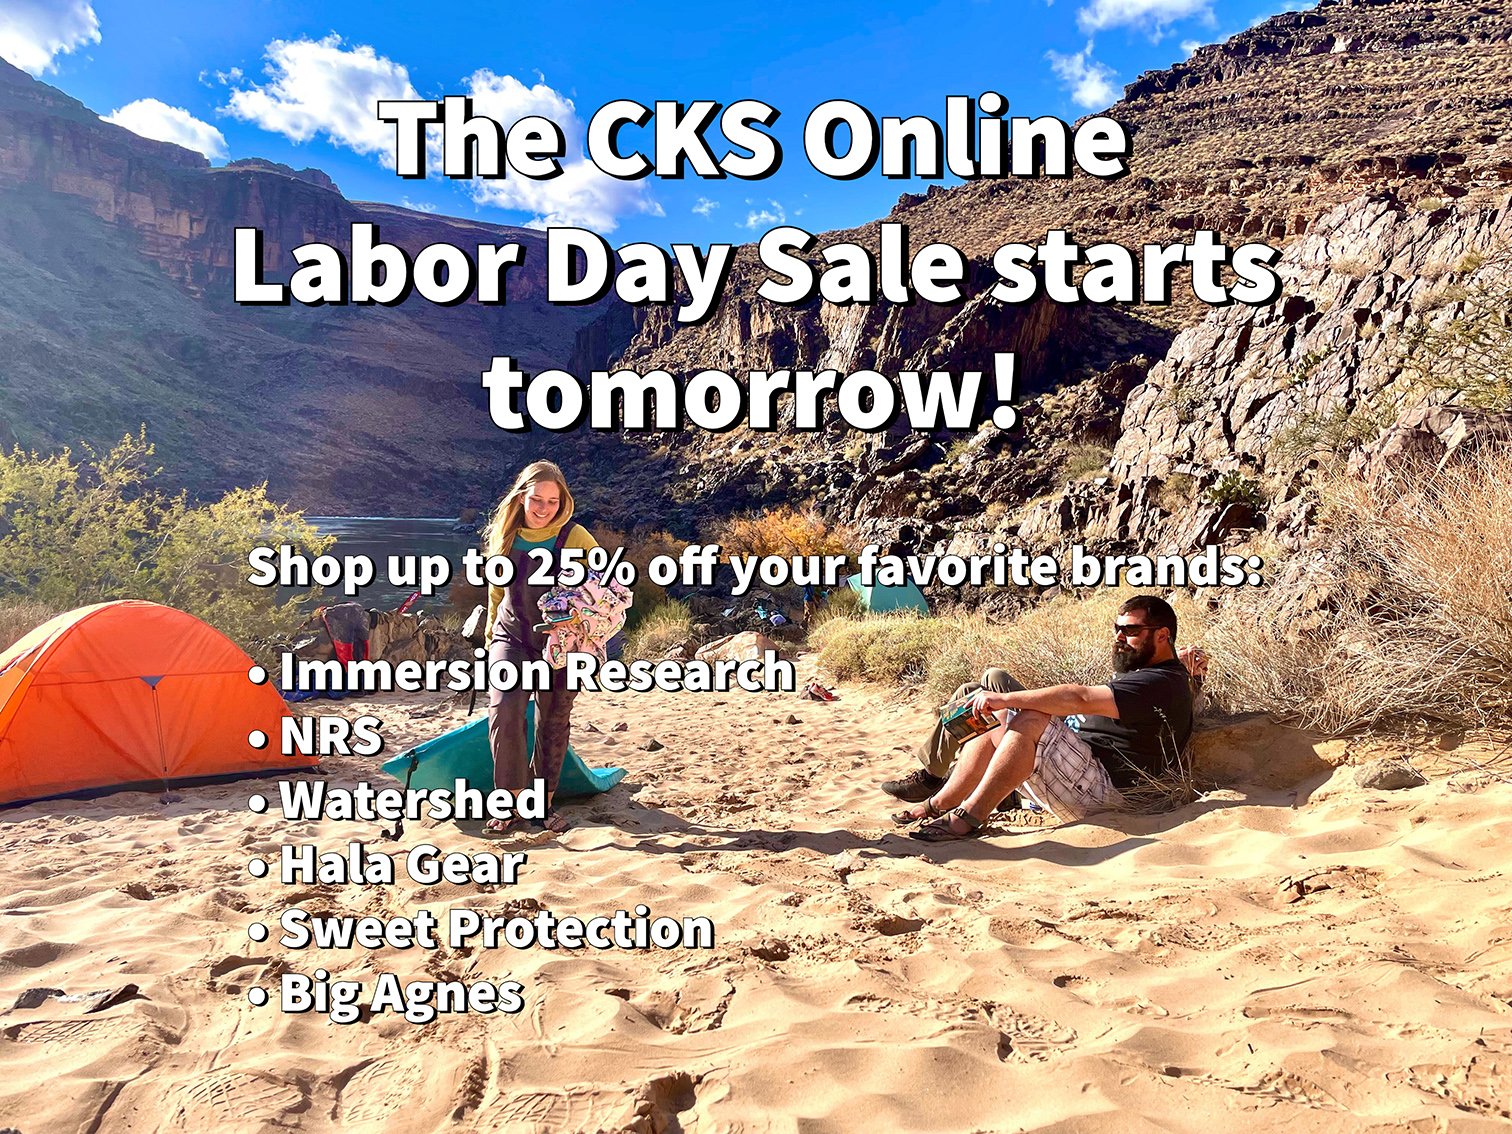 The CKS Labor Day Sale